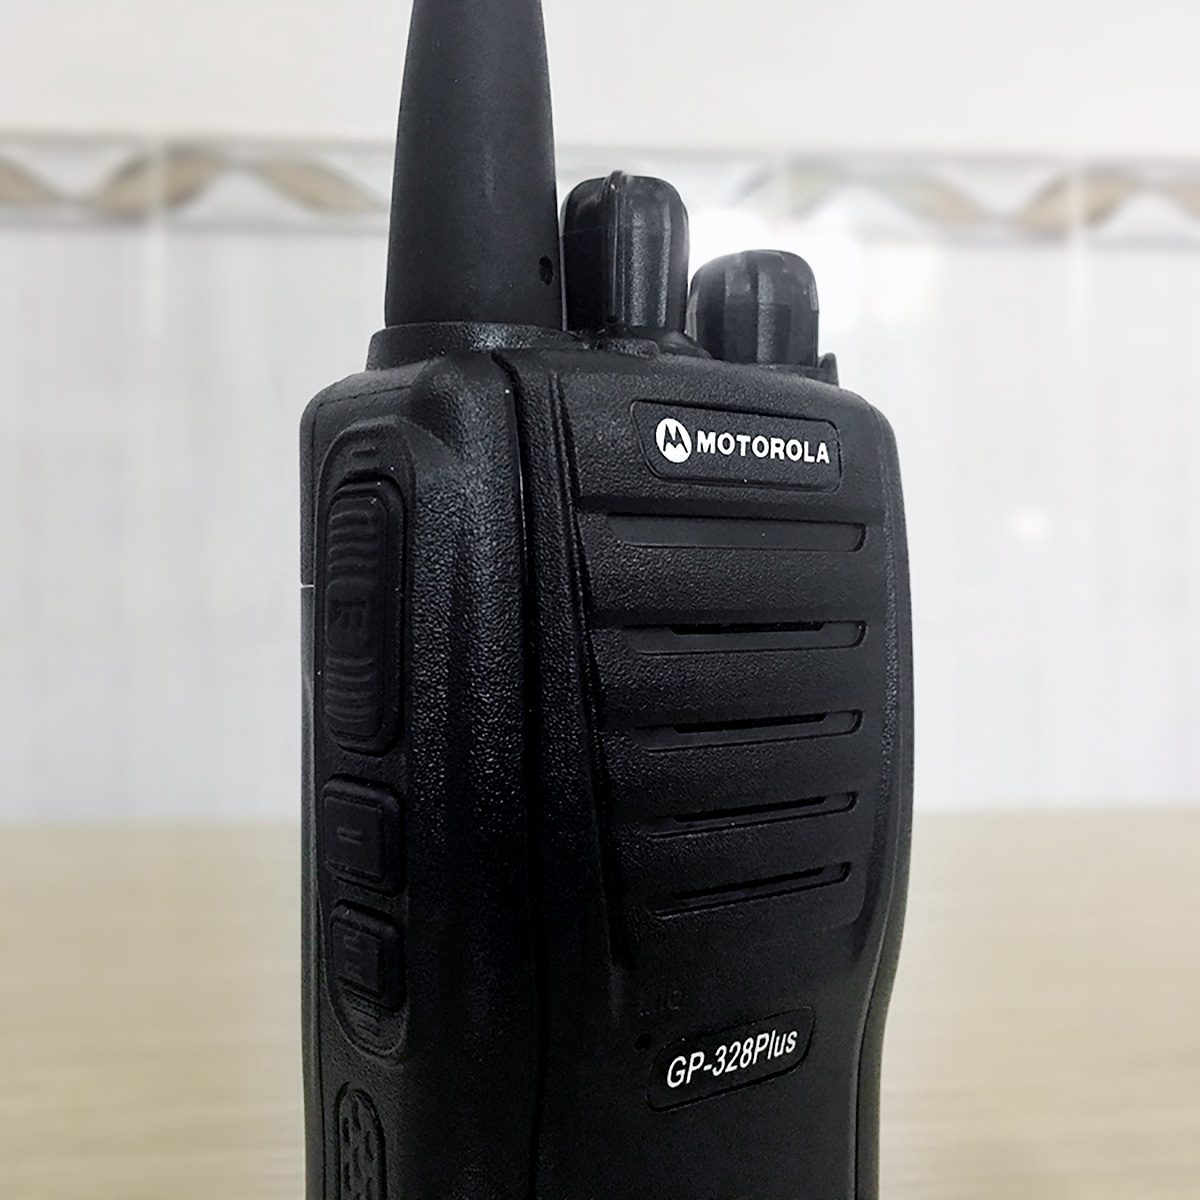 Bộ đàm Motorola GP-328Plus phiên bản nhỏ gọn. Công suất lớn 5W giúp phá vật cản tốt, đàm thoại liên tục 16 giờ – Hàng nhập khẩu